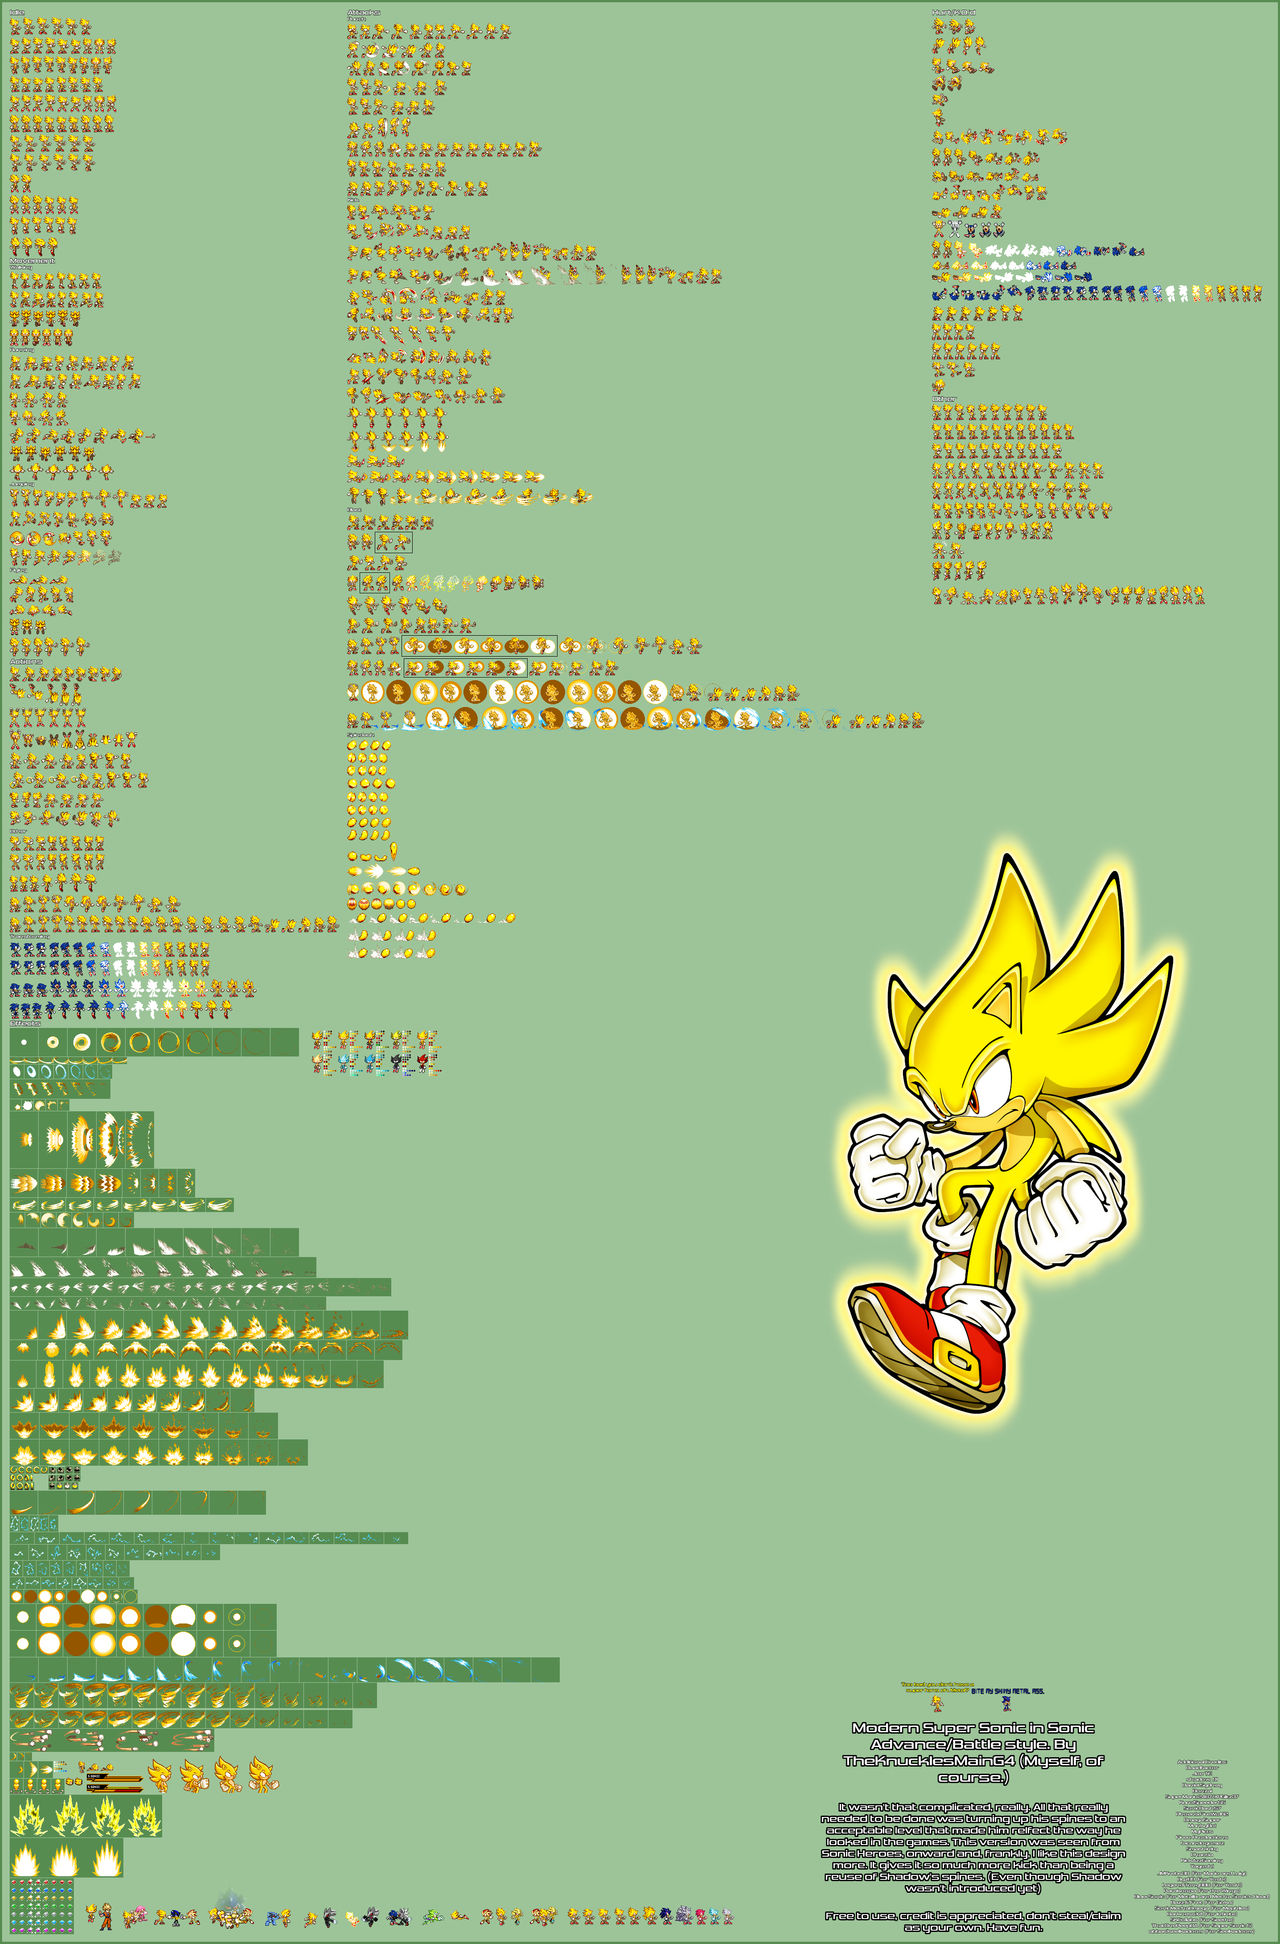 Darkspine Sonic sprites sheet updated W.I.P by DarkSeth644 on